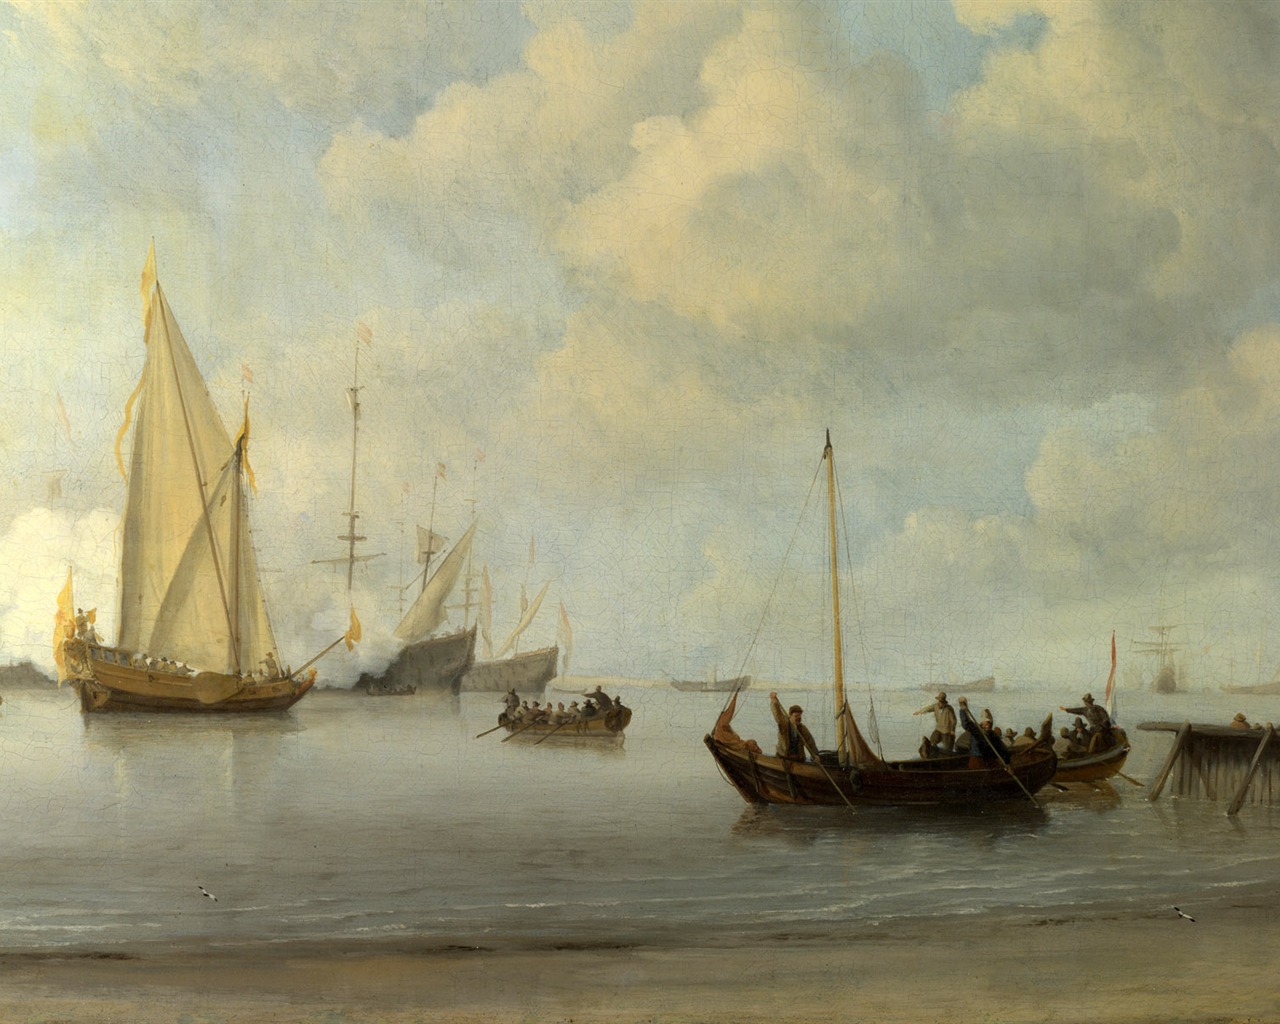 伦敦画廊帆船 壁纸(二)6 - 1280x1024